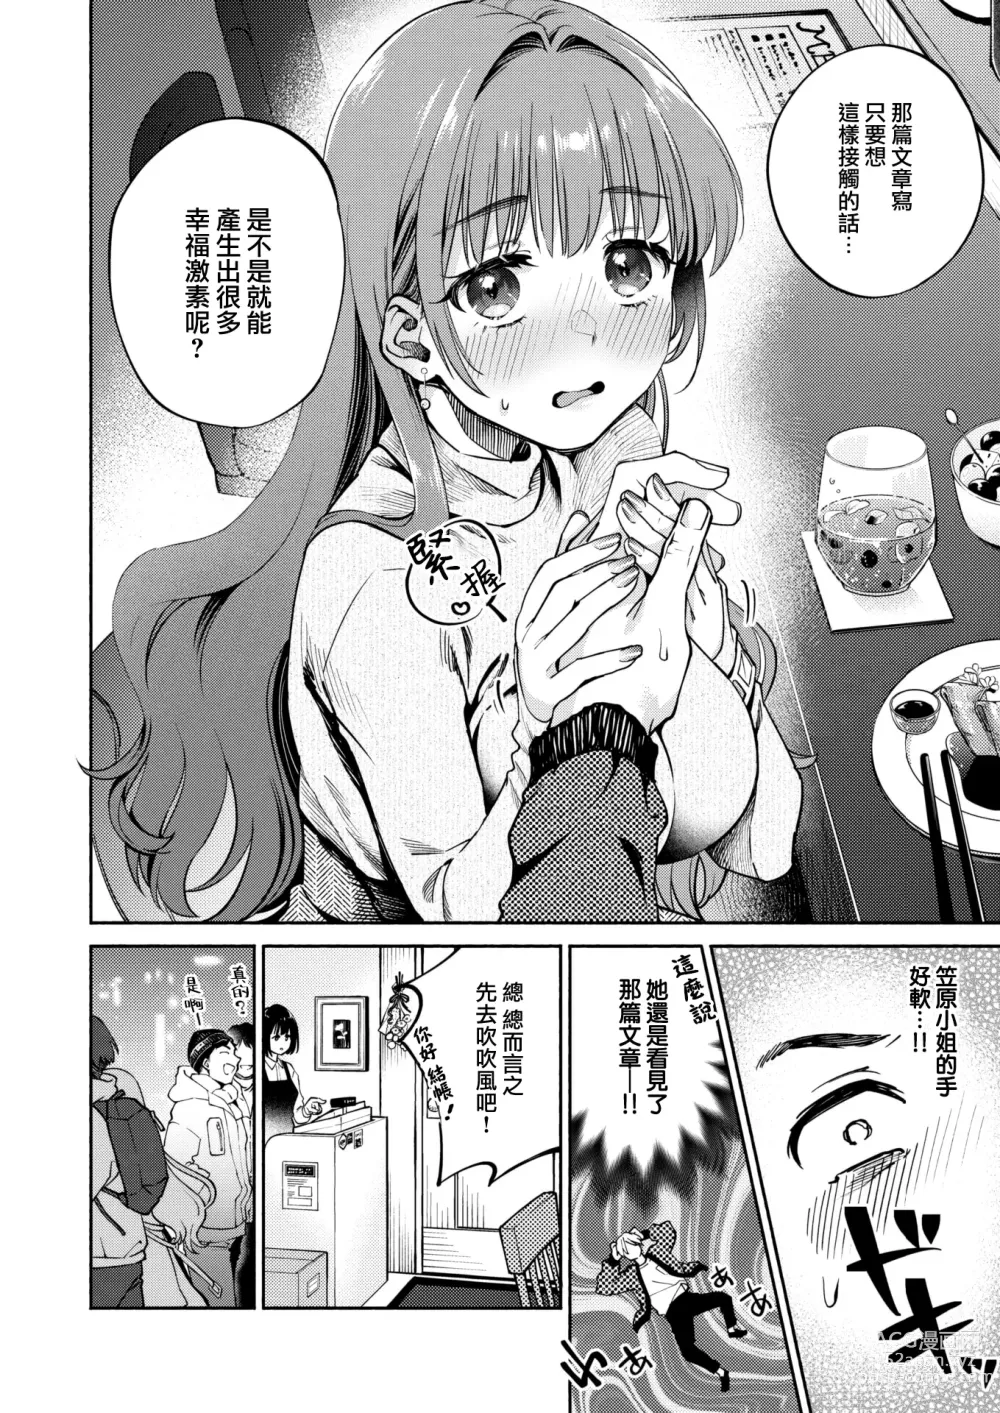 Page 9 of manga Shiawase Hormone